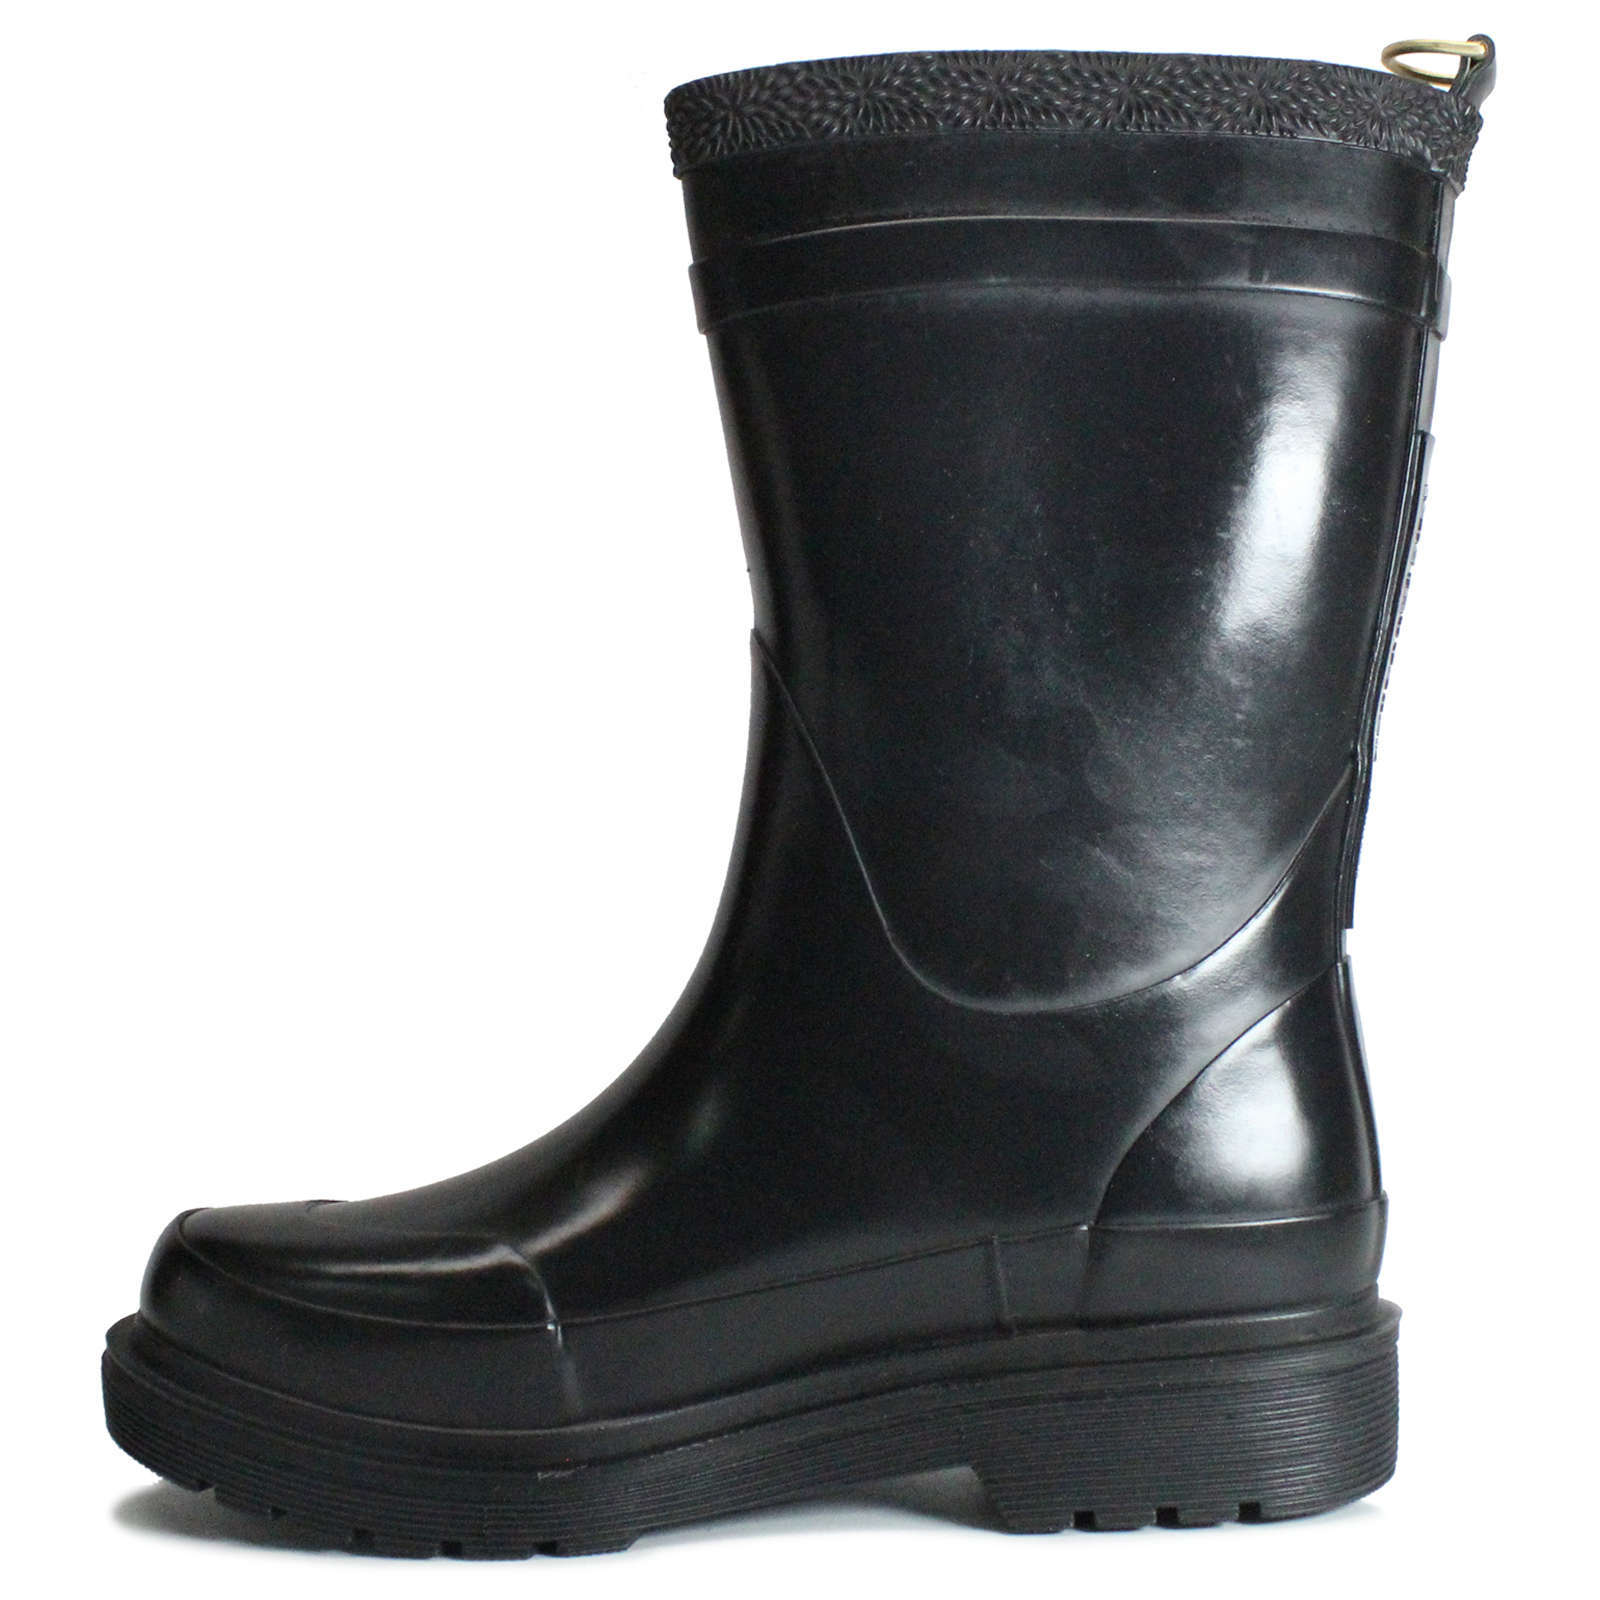 Ilse Jacobsen Rub300 Rubber Women's Medium Wellington Boots#color_black